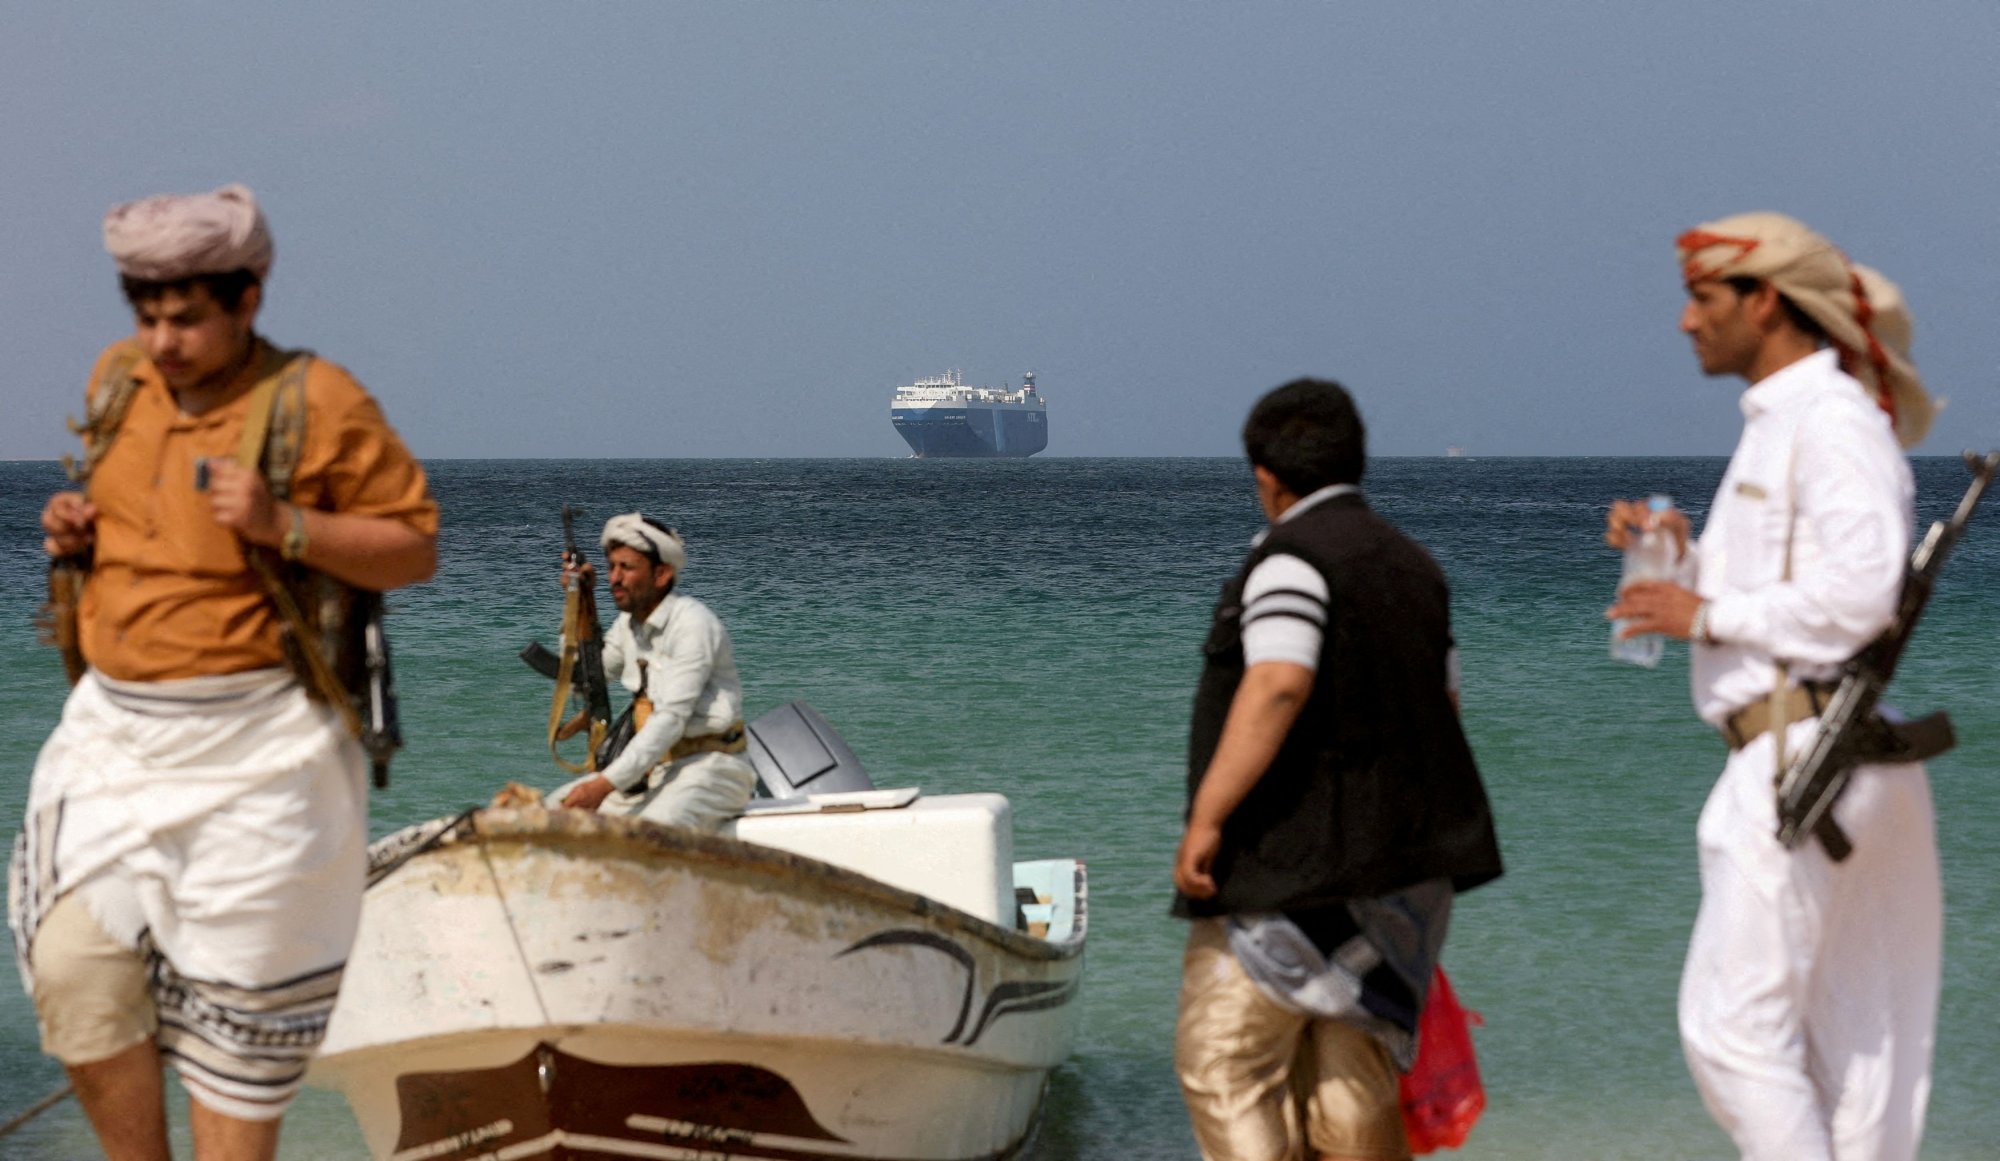 Χούθι: Υπό πίεση η ναυσιπλοΐα λόγω των ανταρτών - Ο οικονομικός αντίκτυπος των επιθέσεων στην Ερυθρά Θάλασσα